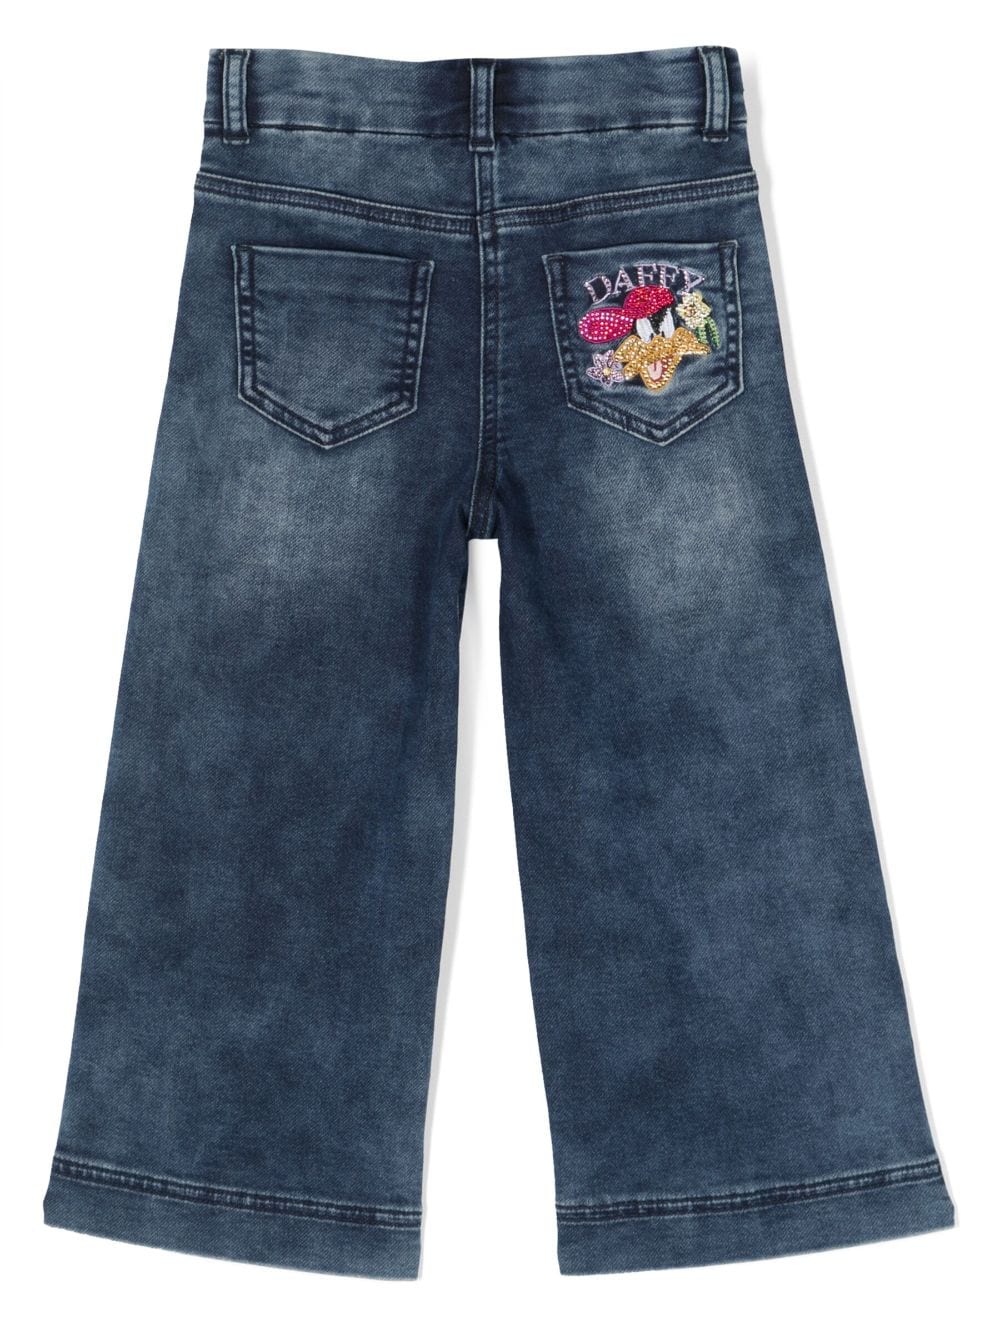 Jeans denim bambina con stampa 'Duffy Duck' posteriore